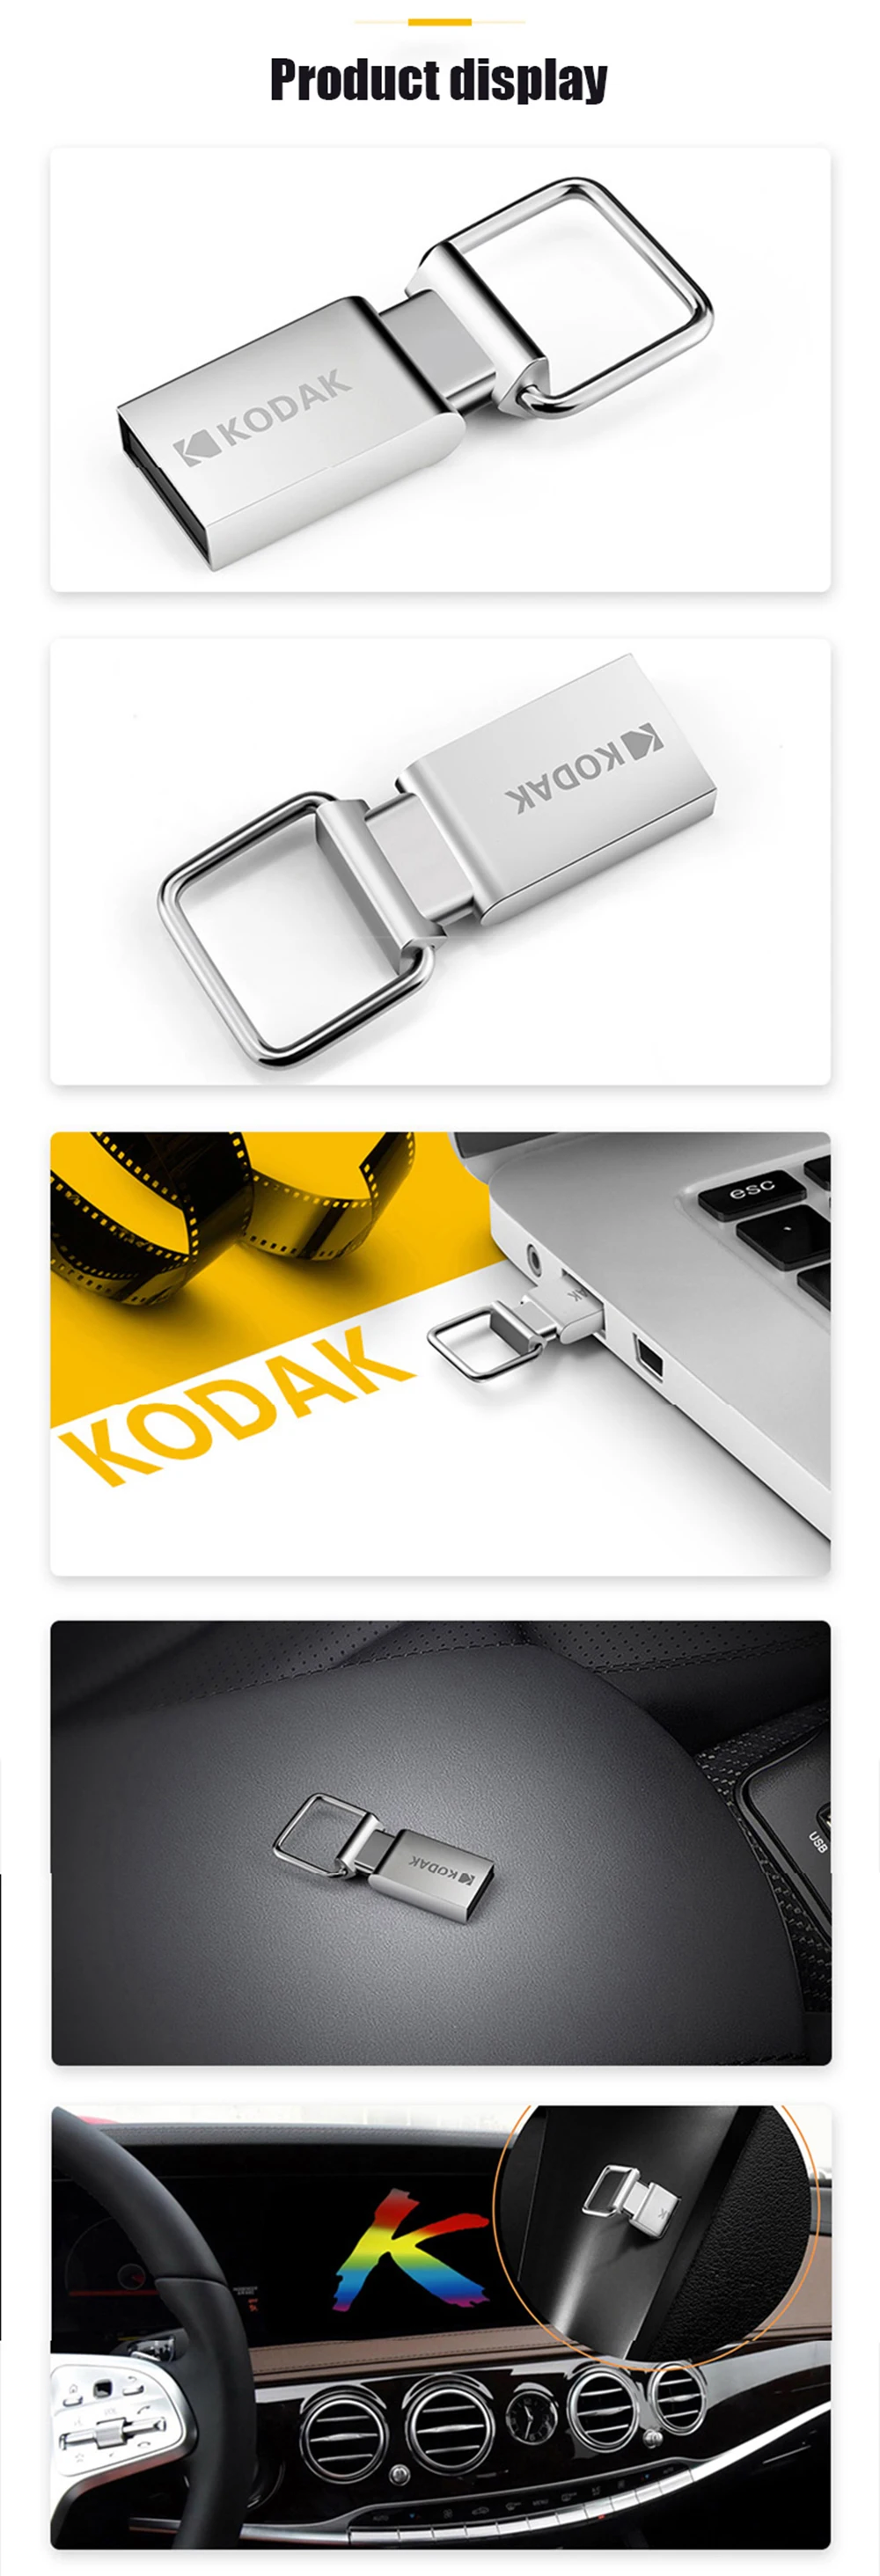 Kodak флеш-накопитель USB флеш-накопитель мини металлический USB K112 16 ГБ 32 ГБ 64 ГБ флеш-карта памяти, Флеш накопитель U диск USB2.0 Флешка USB